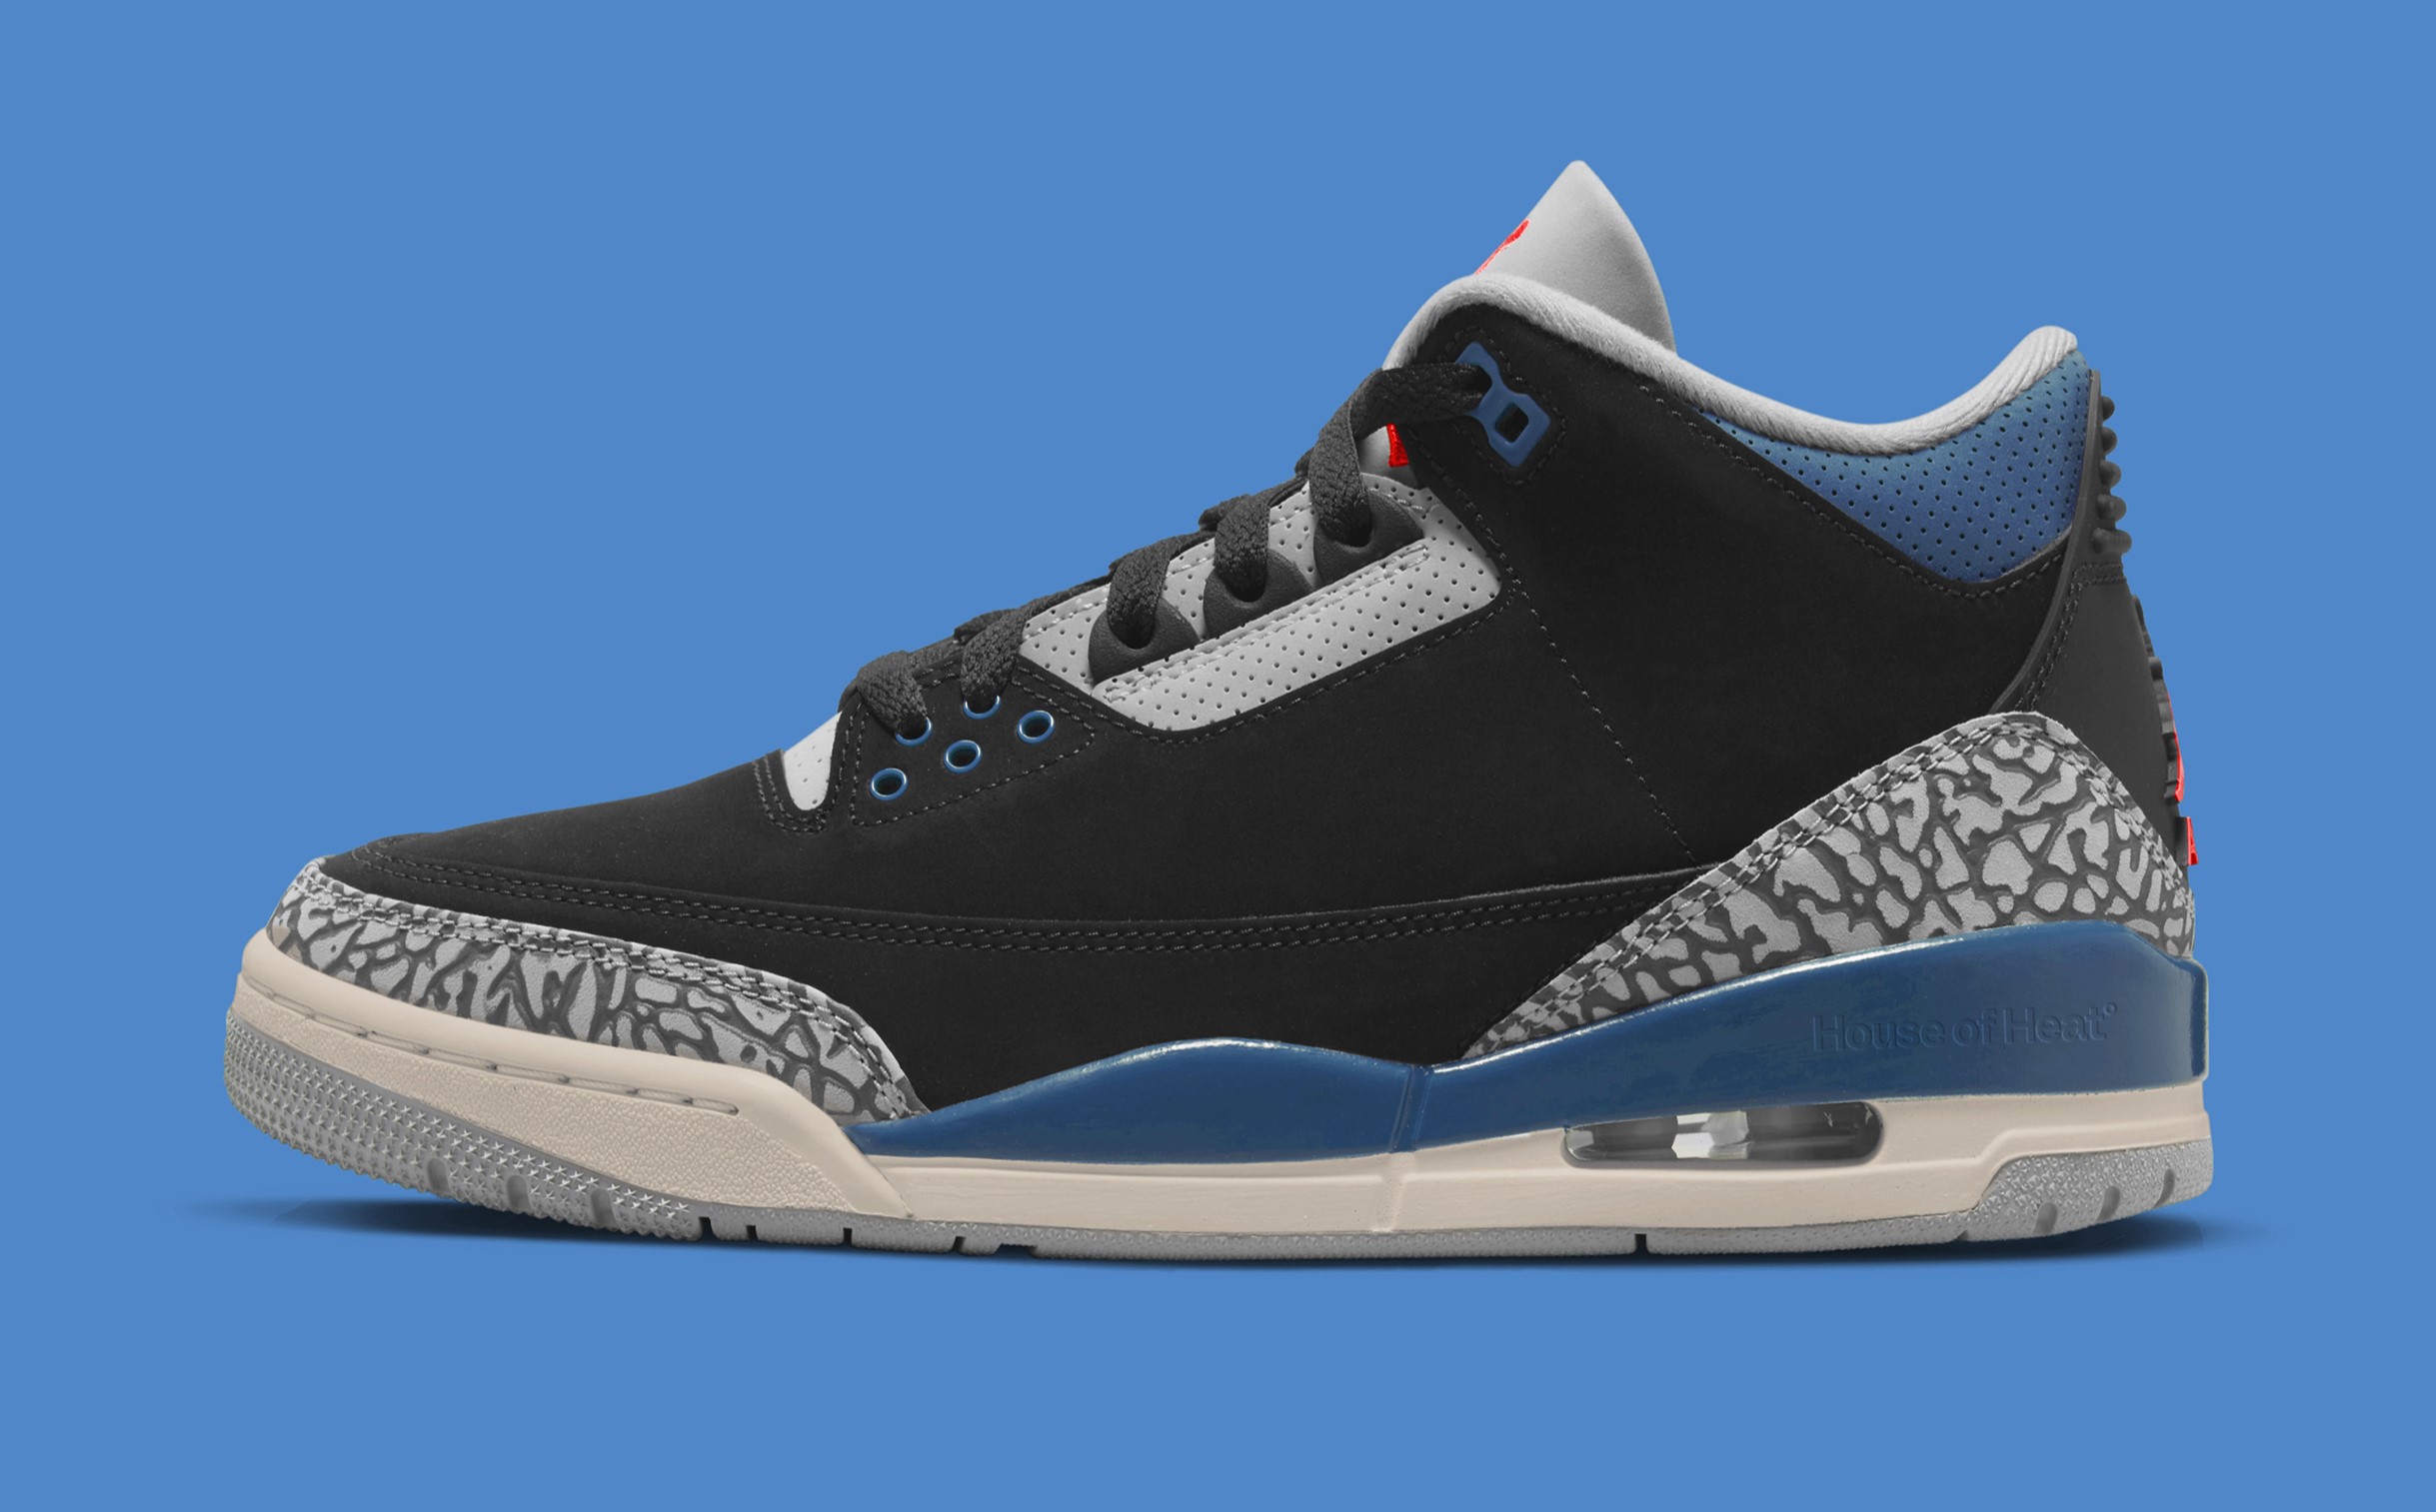 Air Jordan 3 "Black Military Blue" Sneaker links